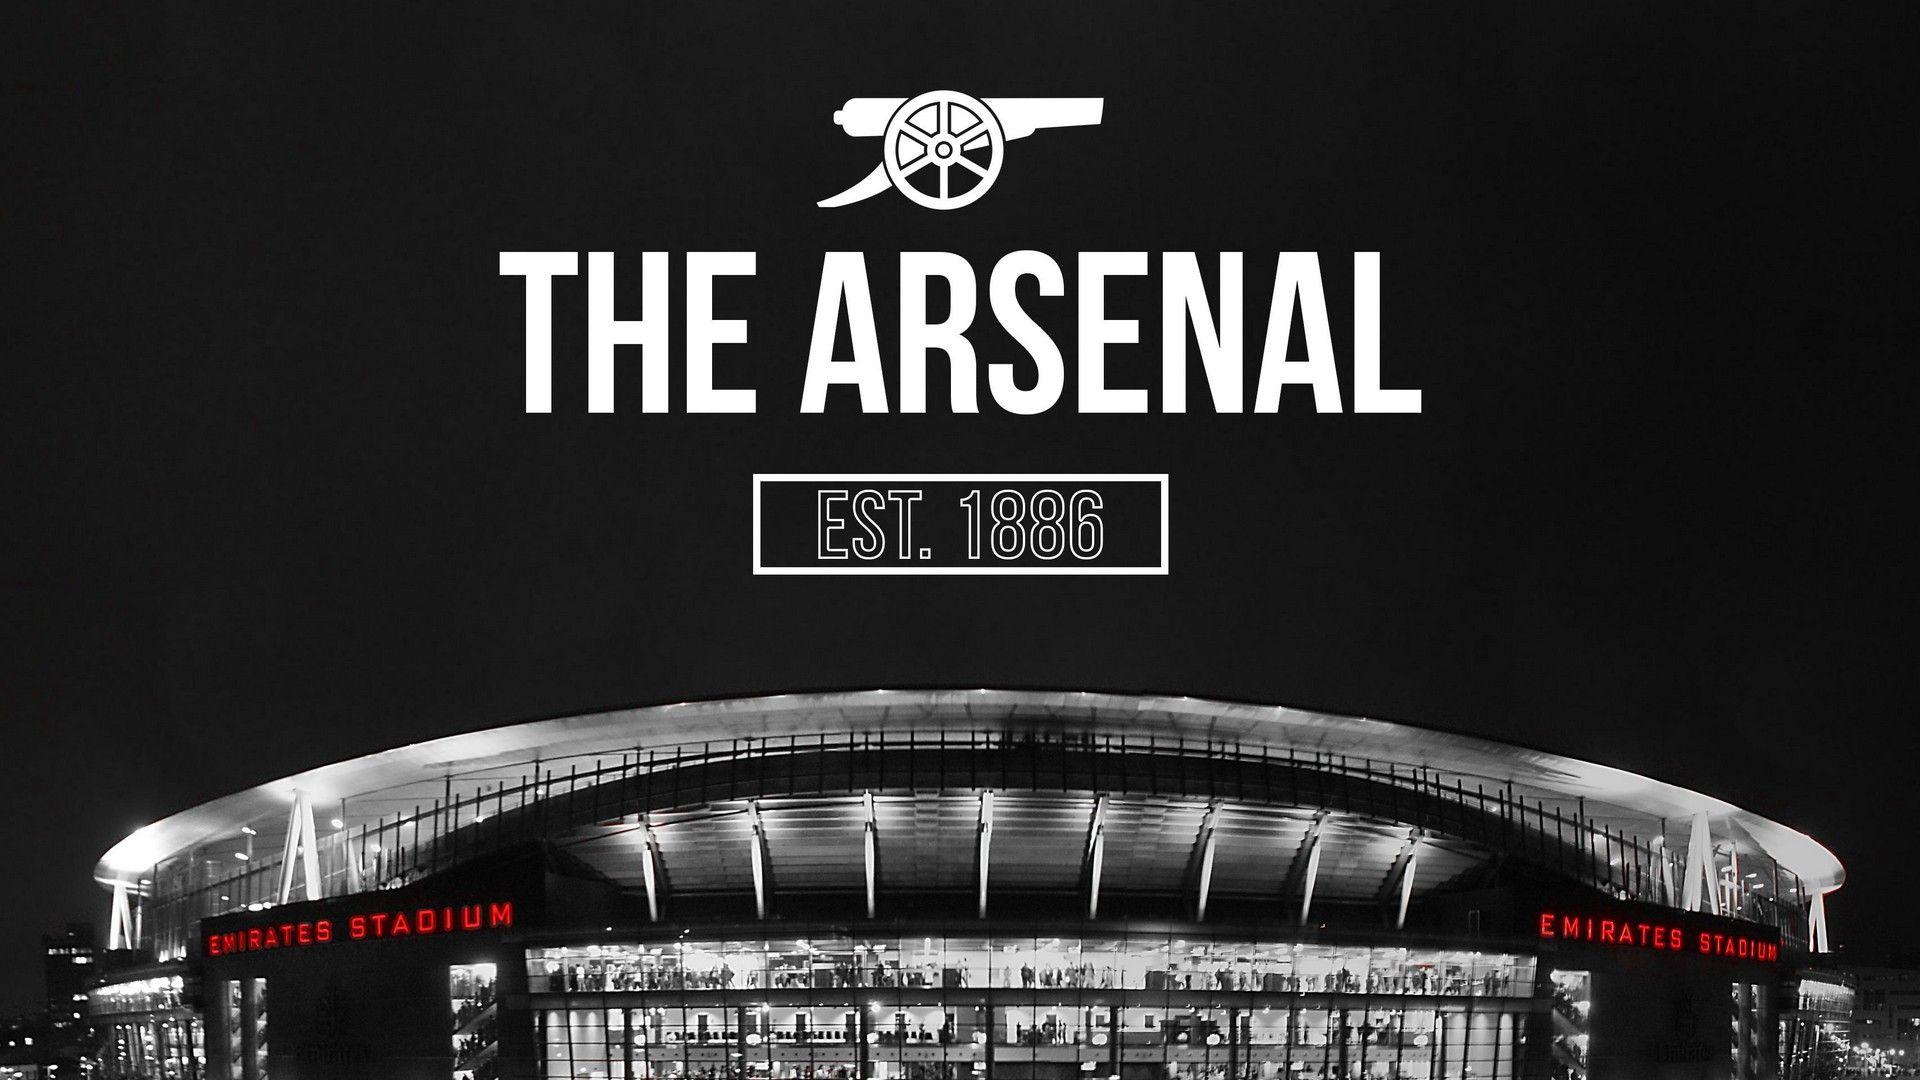 Emirates Stadium Arsenal Wallpaper HD. Arsenal wallpaper